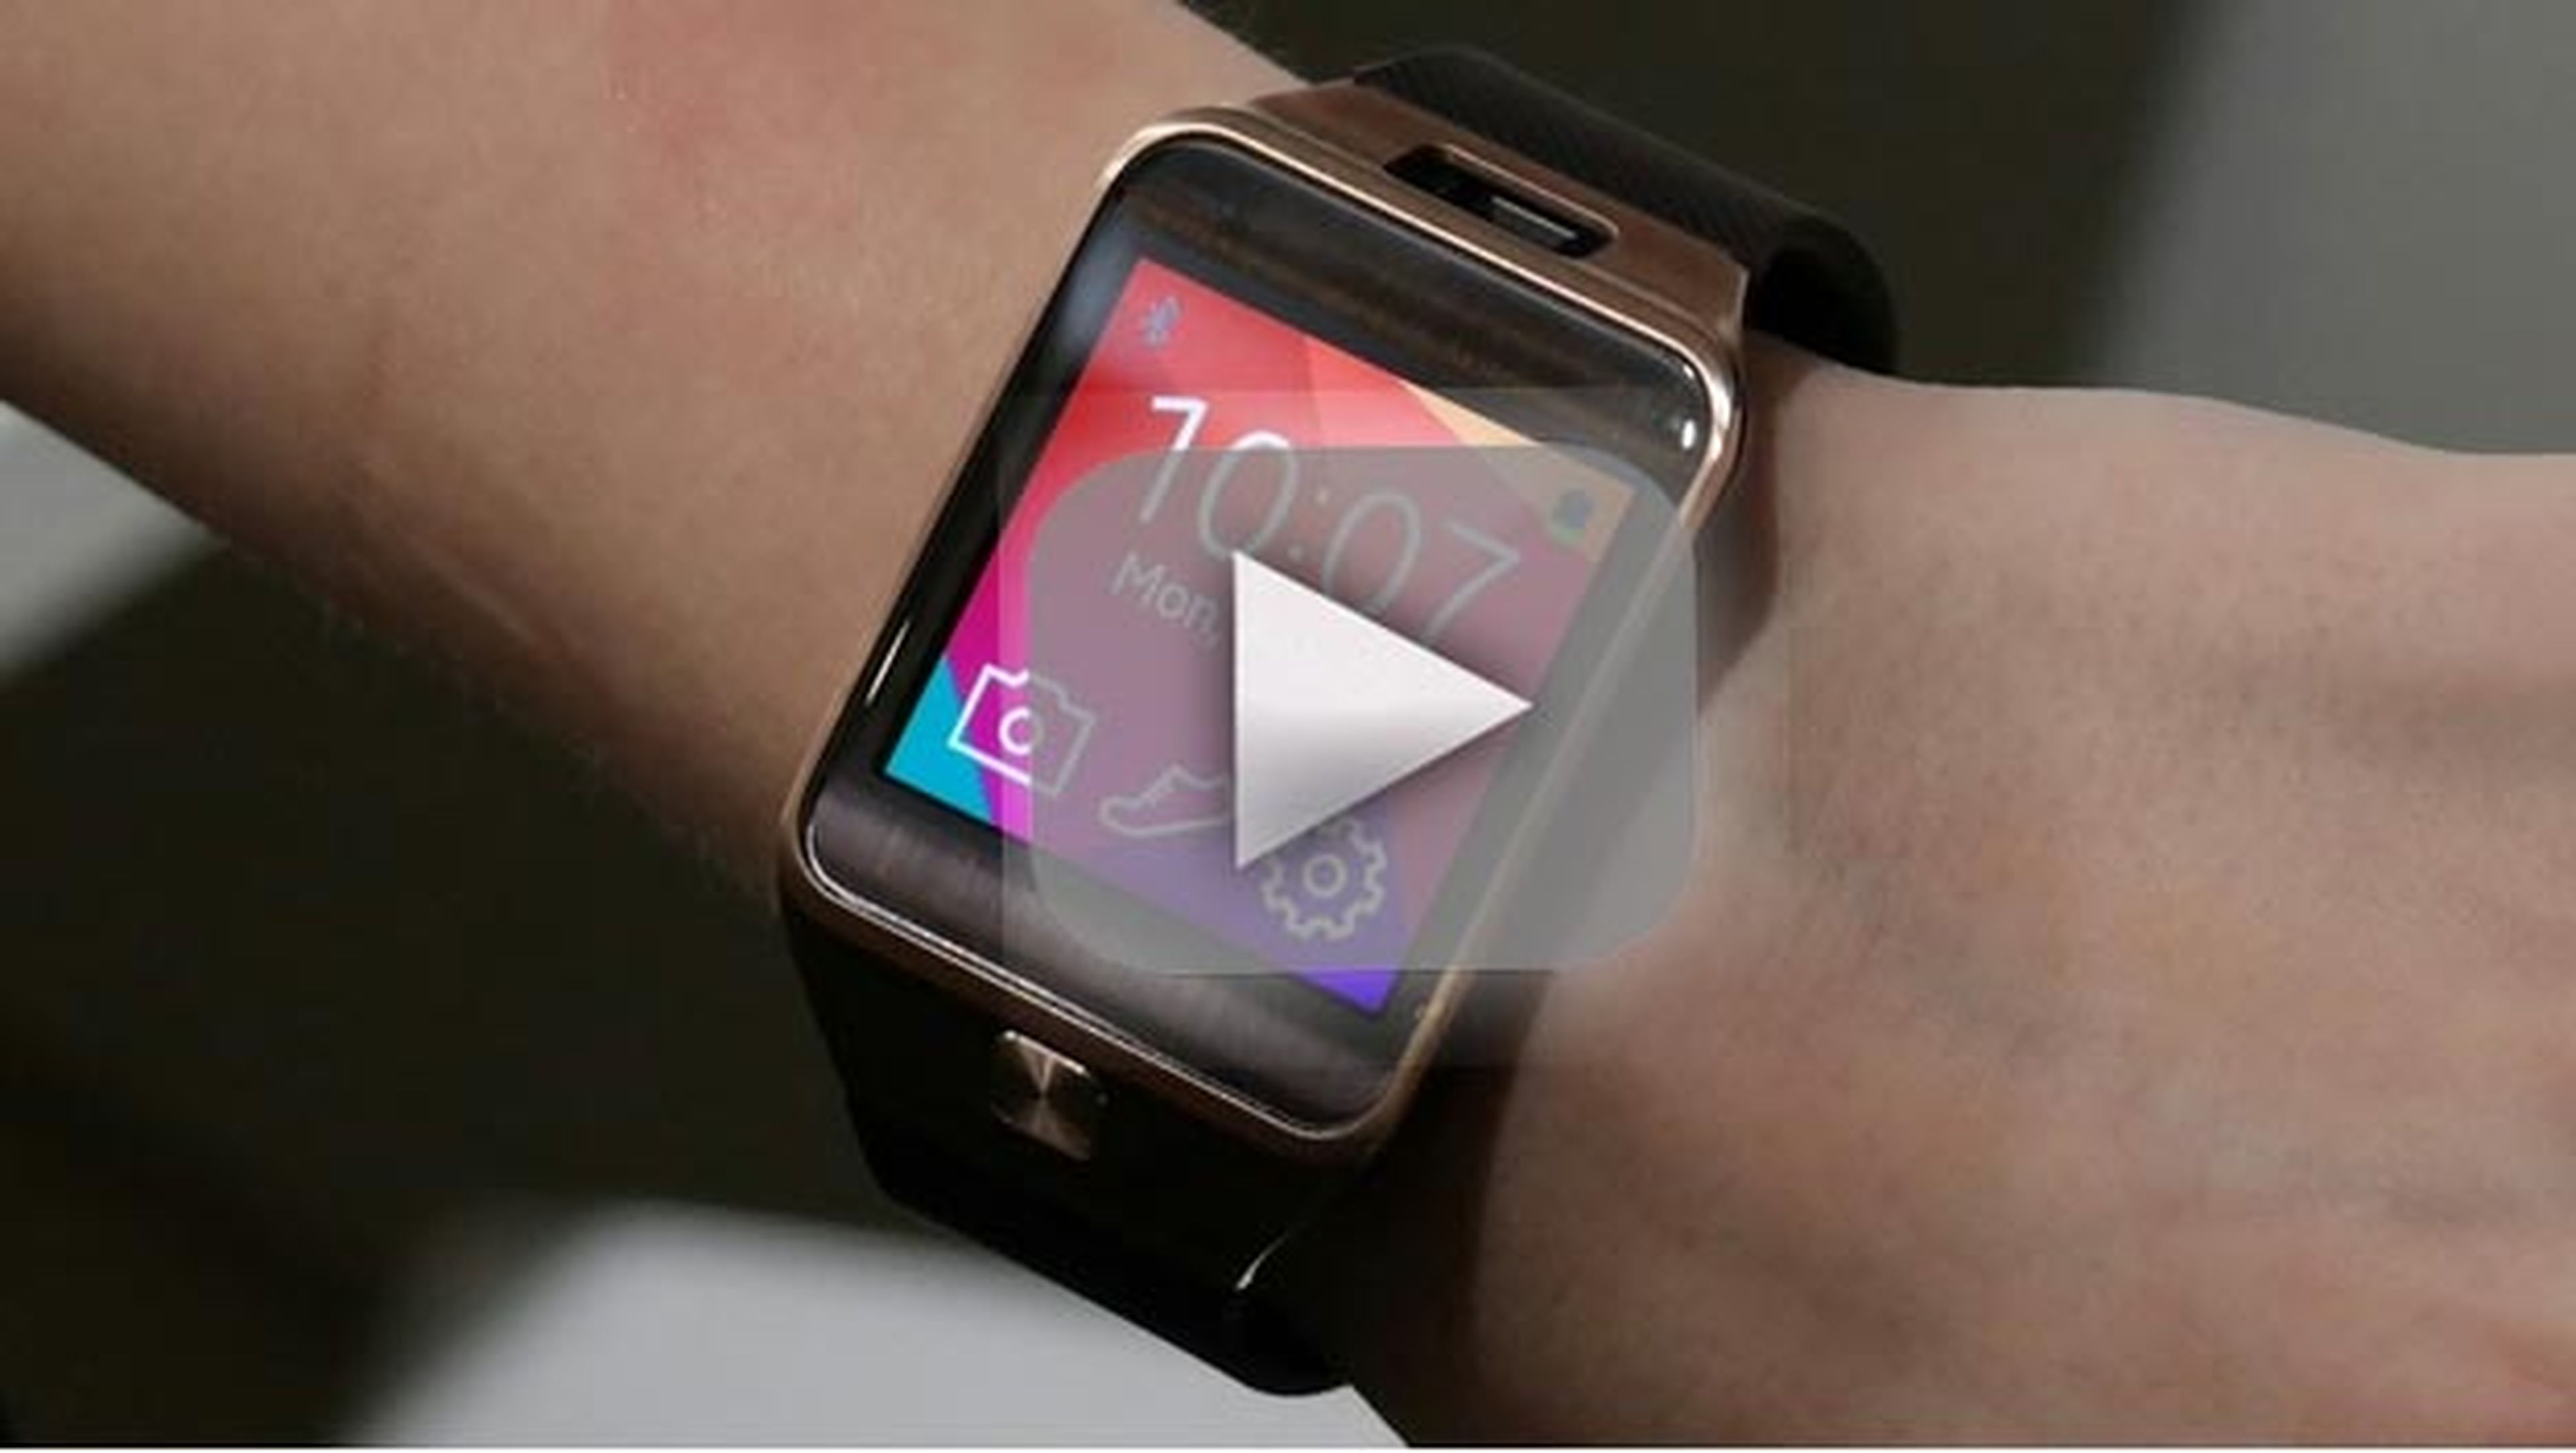 Hemos probado el smartwatch o reloj inteligente Samsung Gear 2 (fotos y vídeo)